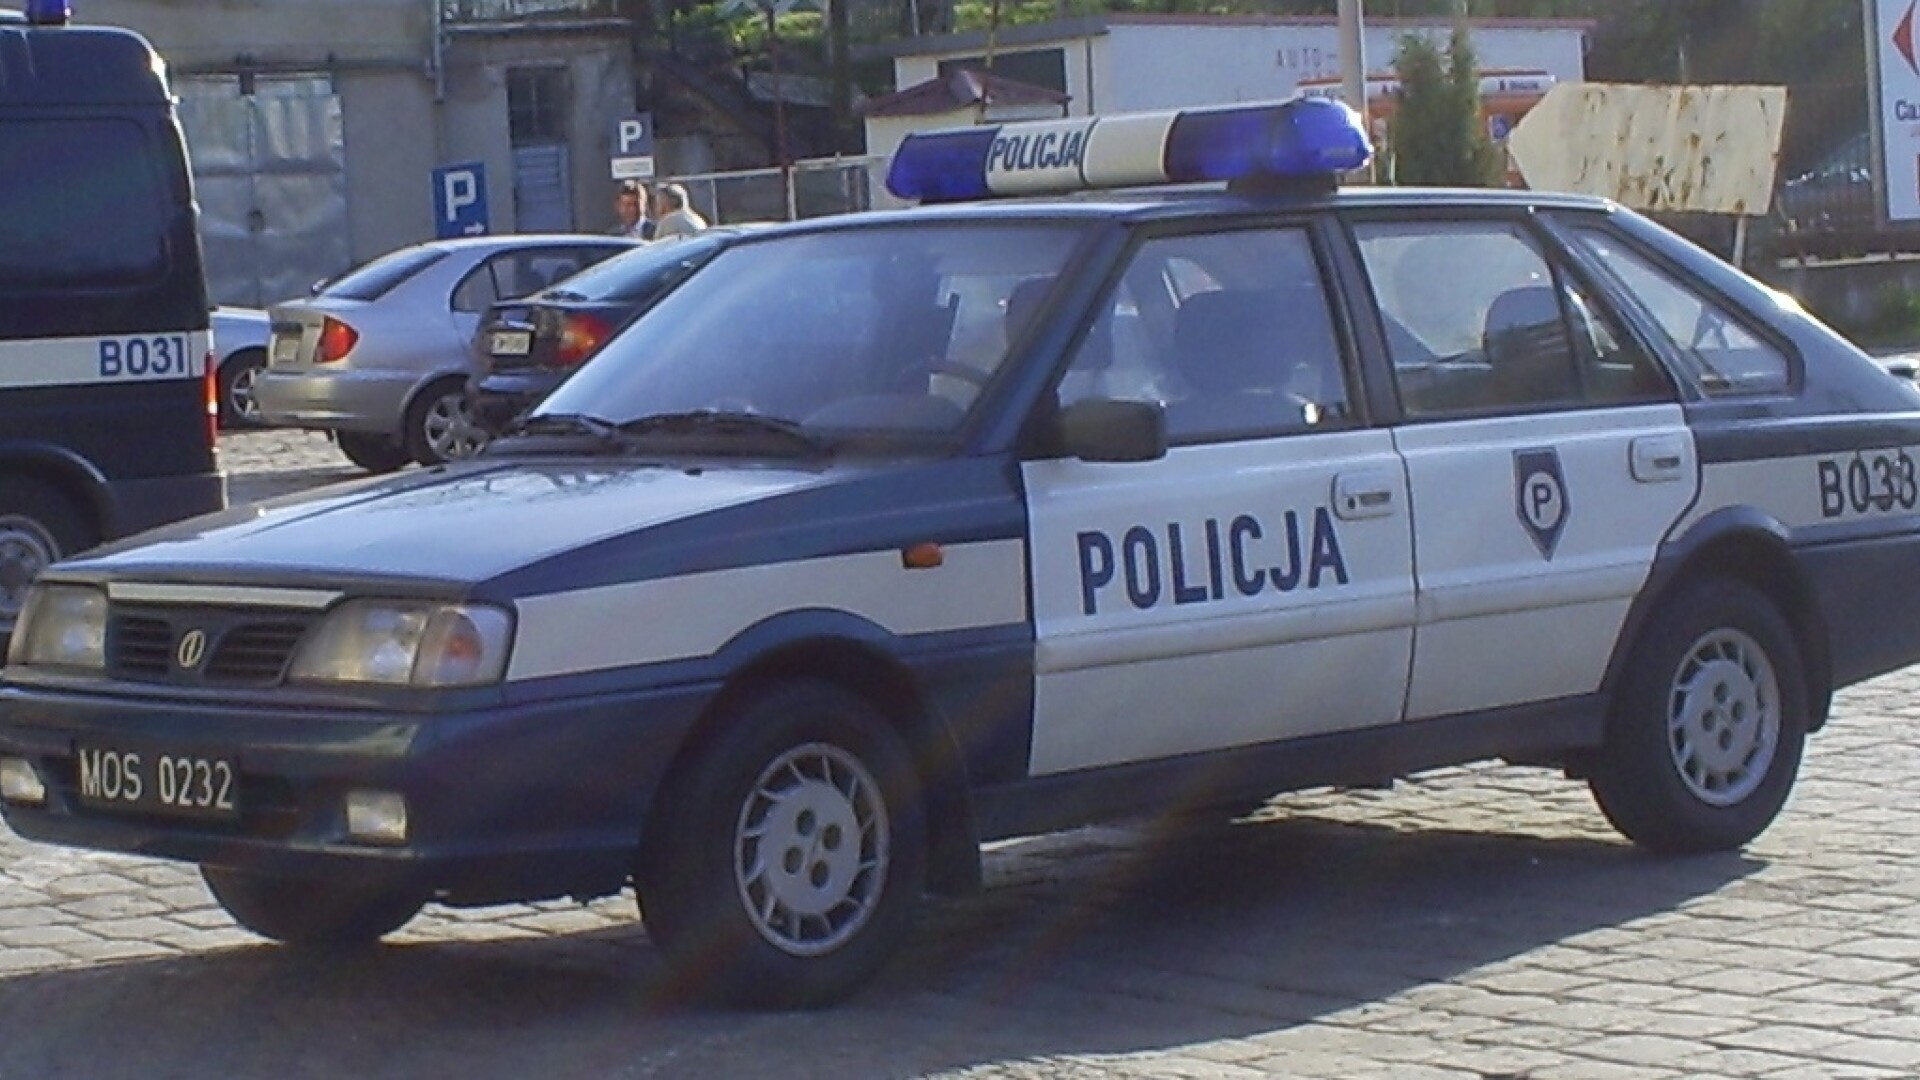 Politie Polonia